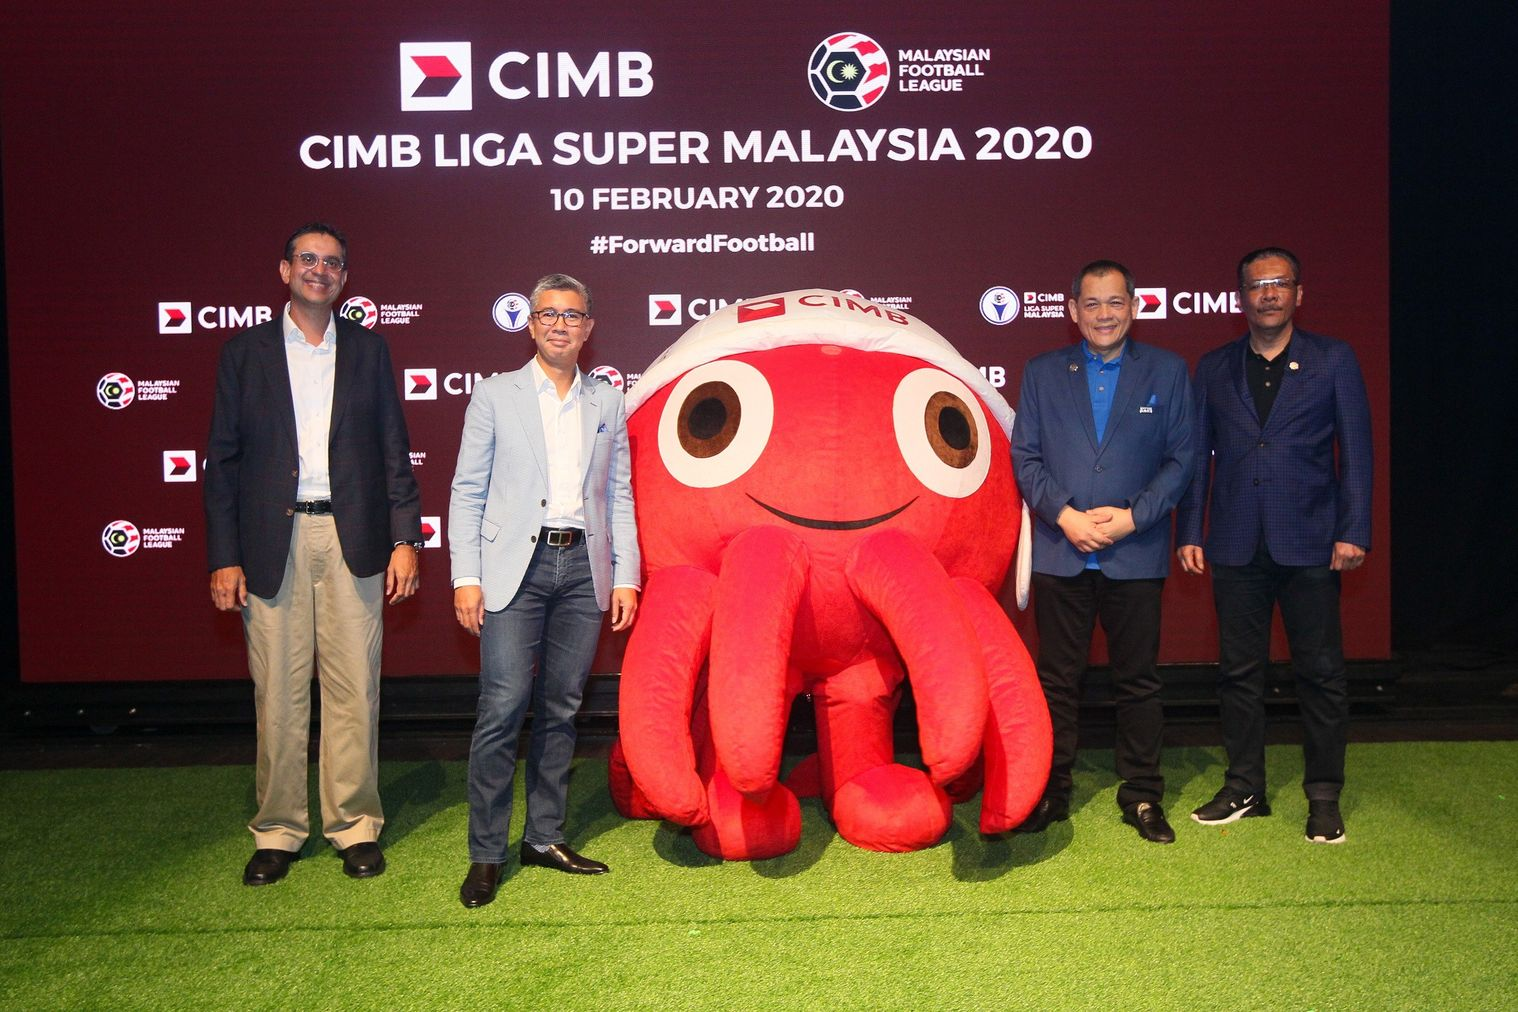 CIMB Liga Super Malaysia 